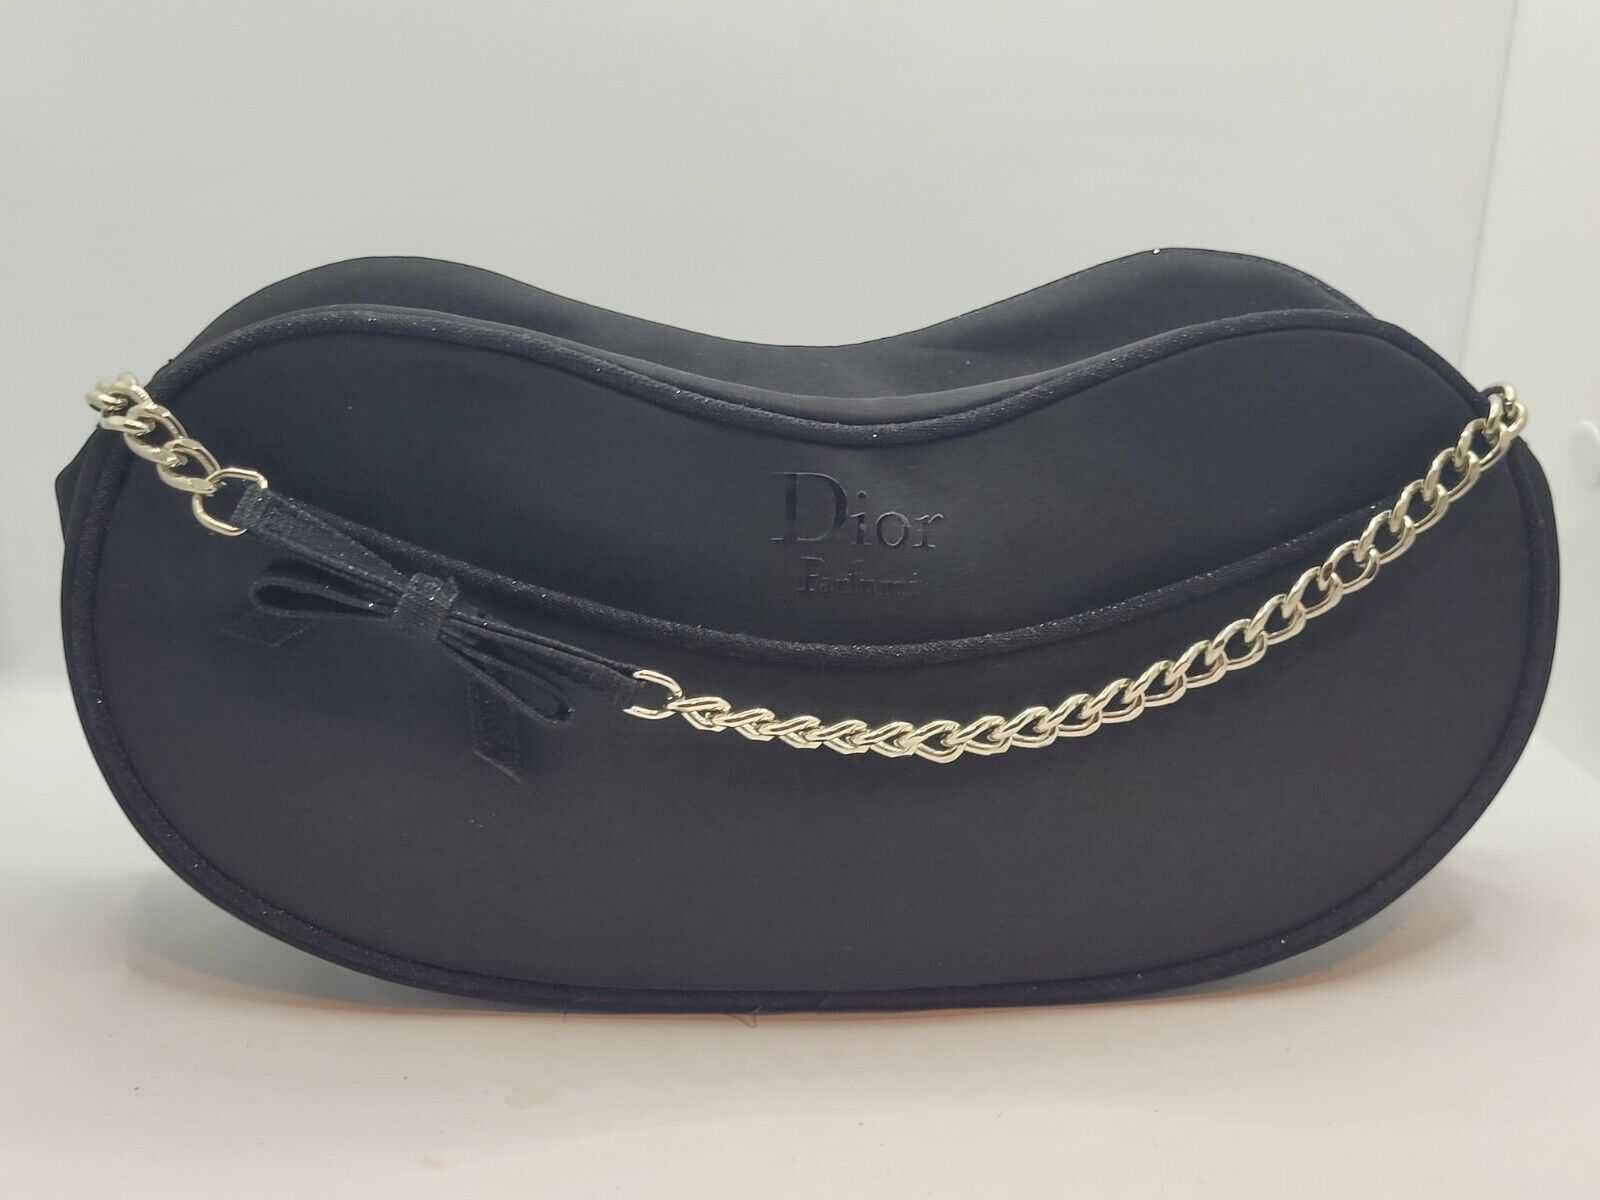 Нова вечерна / официална черна дамска чантичка Dior, Диор, чанта, клъч